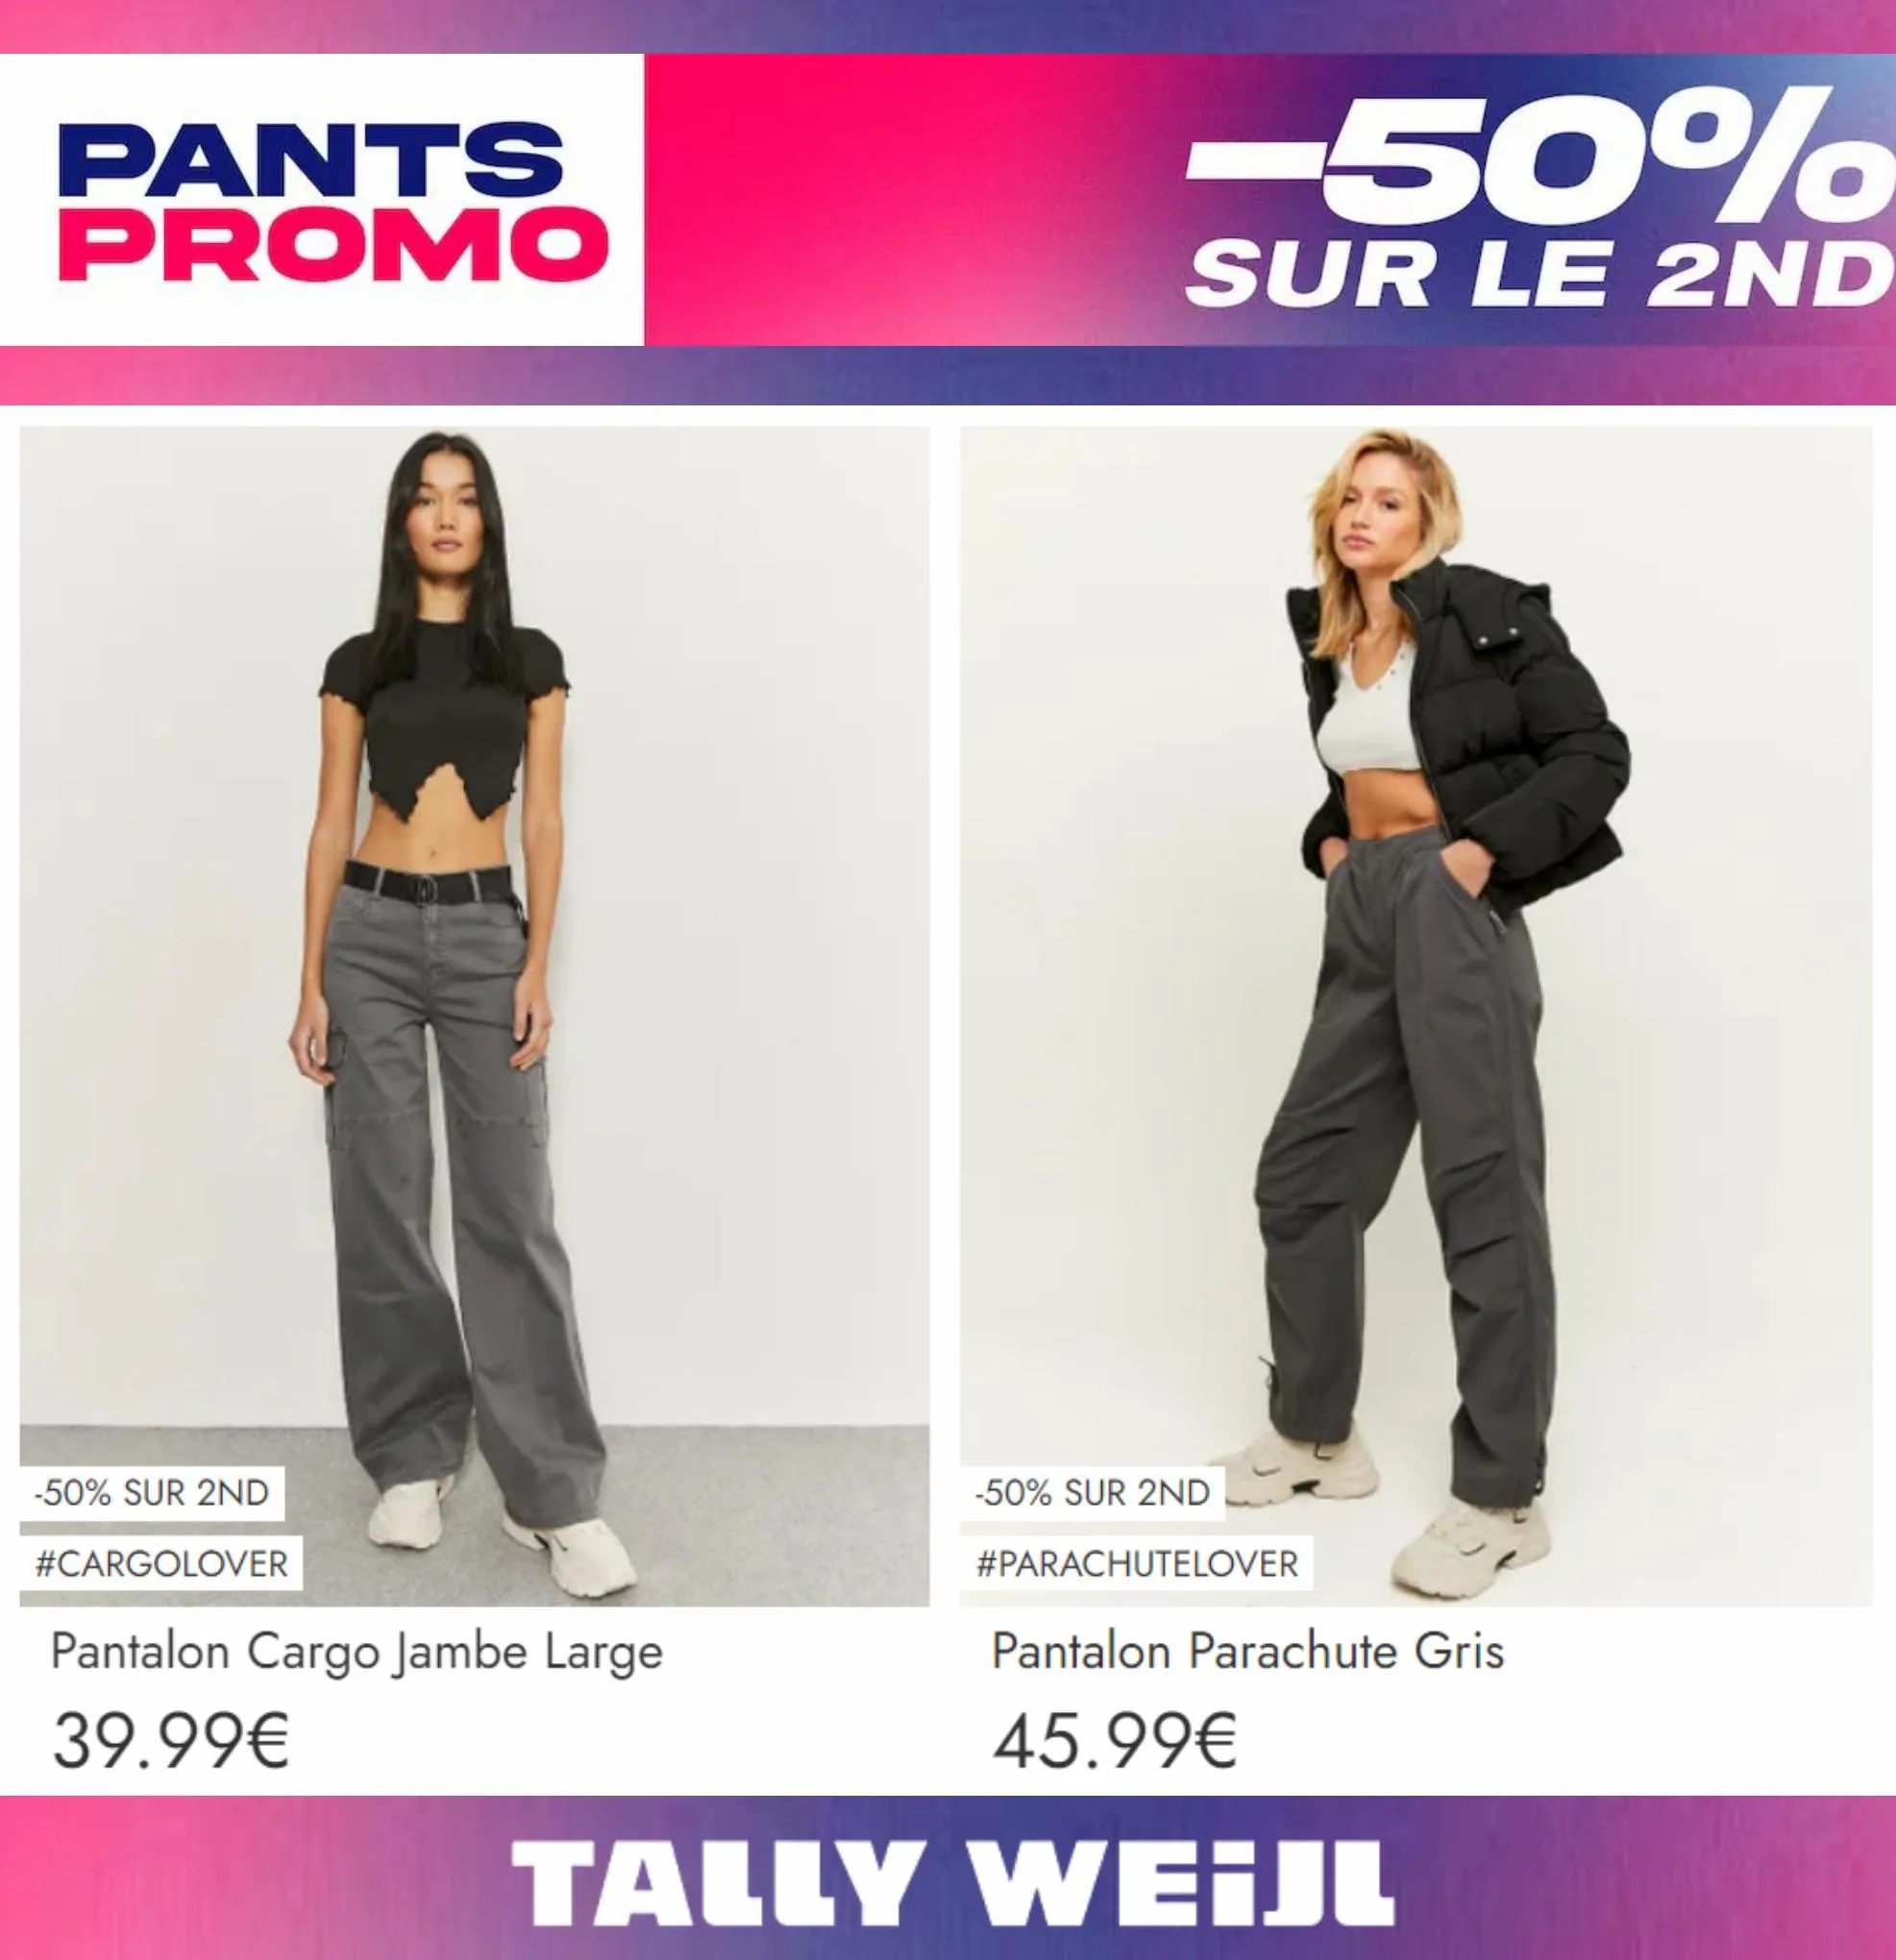 Catalogue Pants Promo -50% sur le 2nd*, page 00005